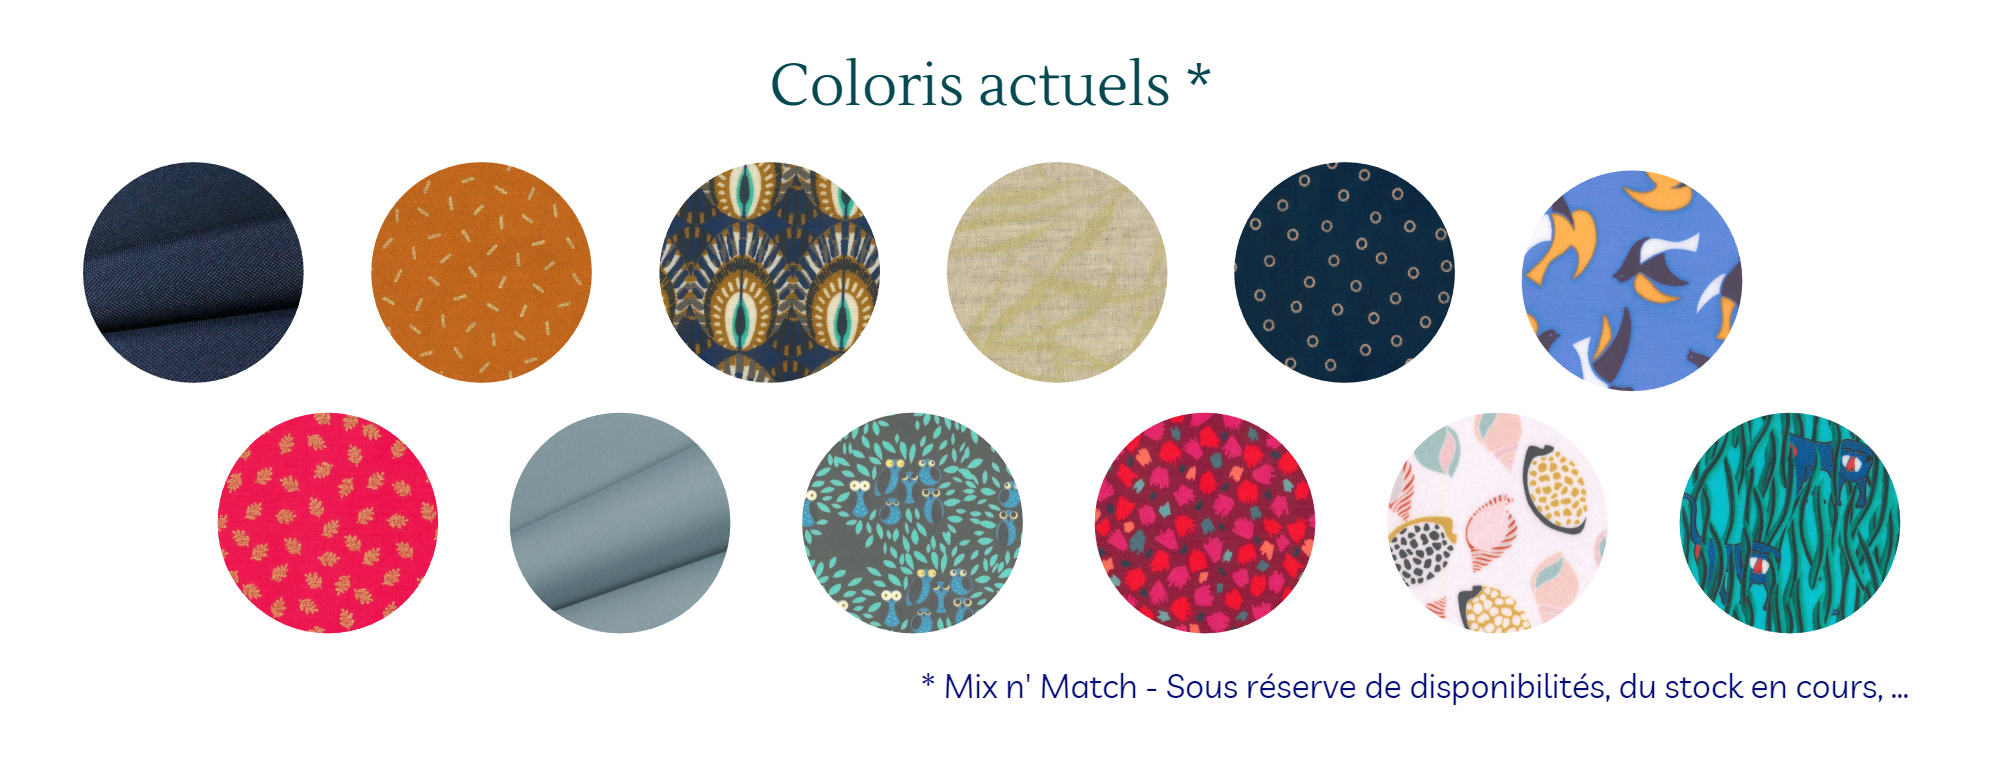 coloris possibles - tissus de la collection en cours.